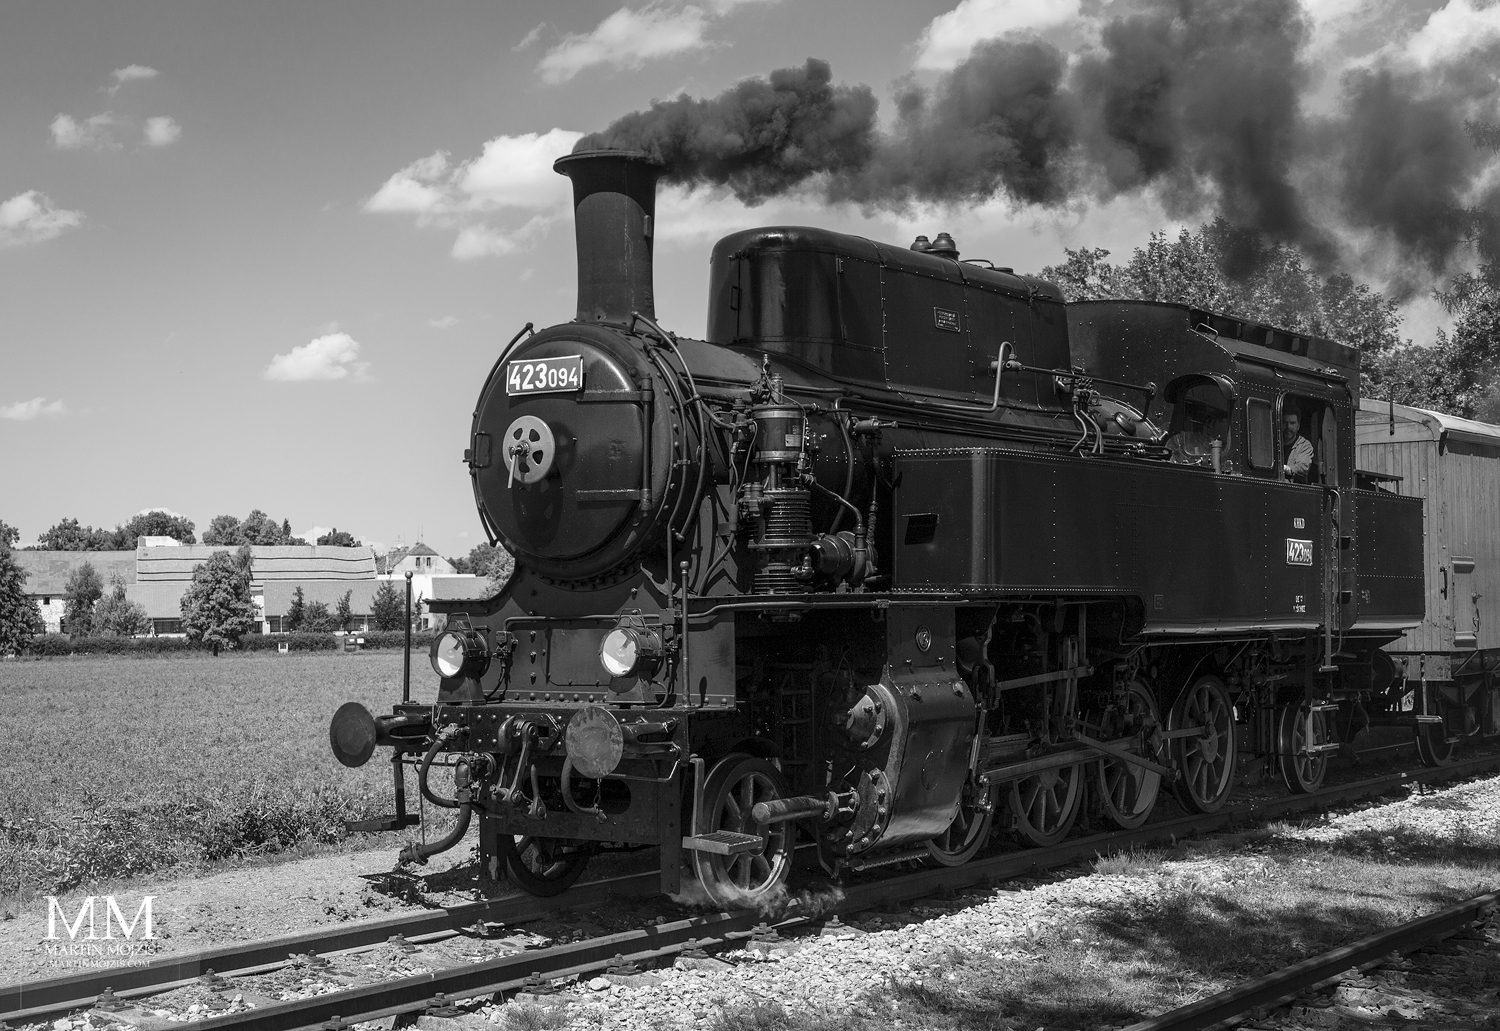 Černobílá fotografie parní lokomotivy. Velkoformátová umělecká fotografie. Martin Mojžíš.